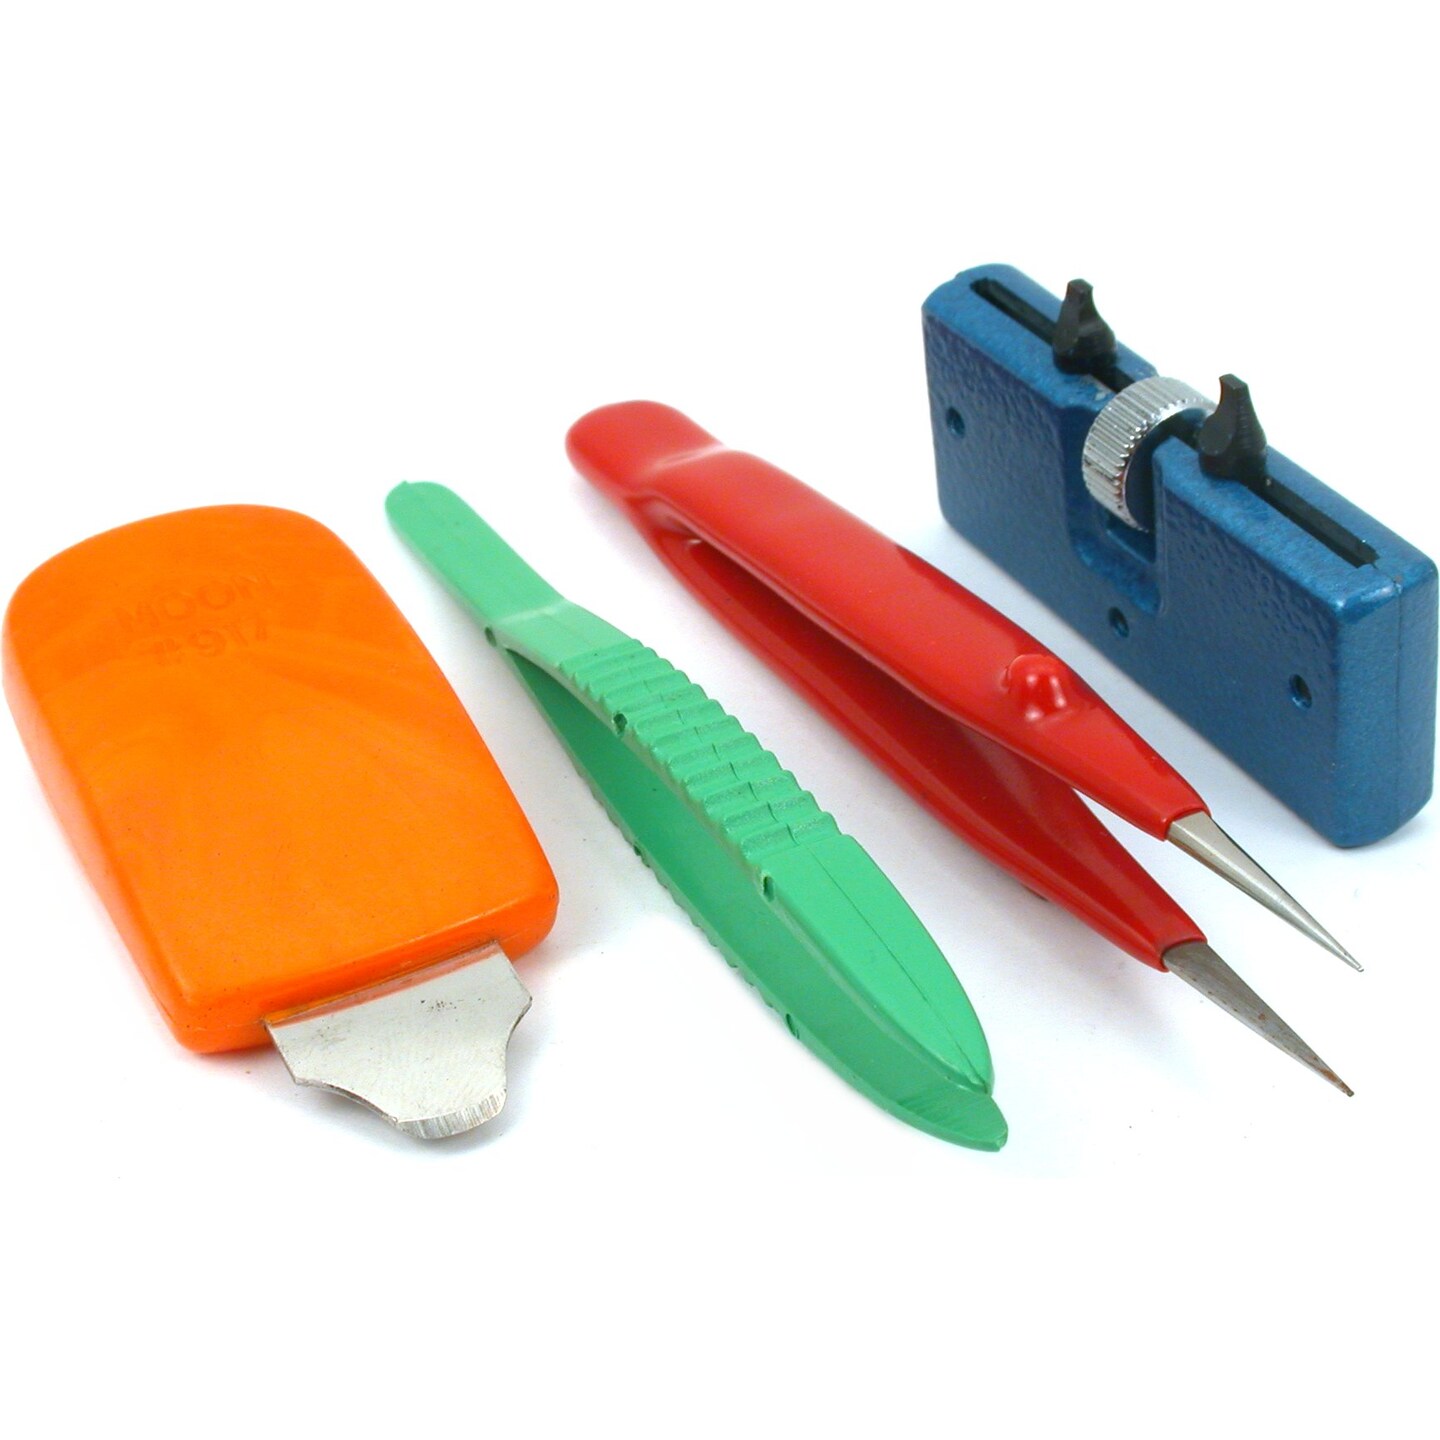 Plastic Tweezers for Watch Batteries